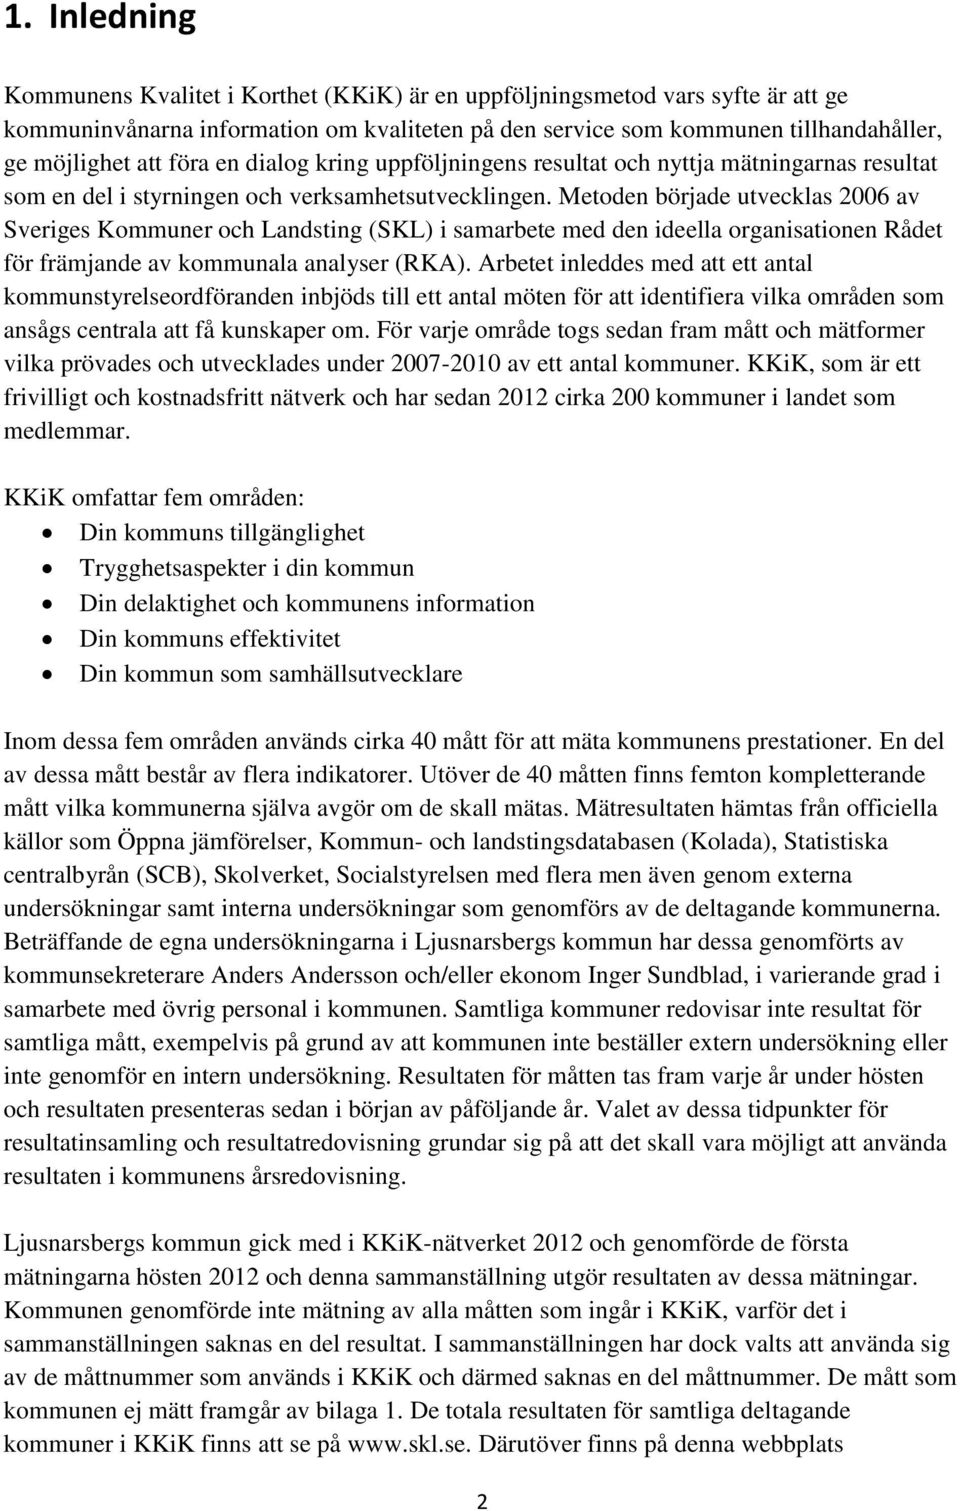 Metoden började utvecklas 2006 av Sveriges er och Landsting (SKL) i samarbete med den ideella organisationen Rådet för främjande av kommunala analyser (RKA).